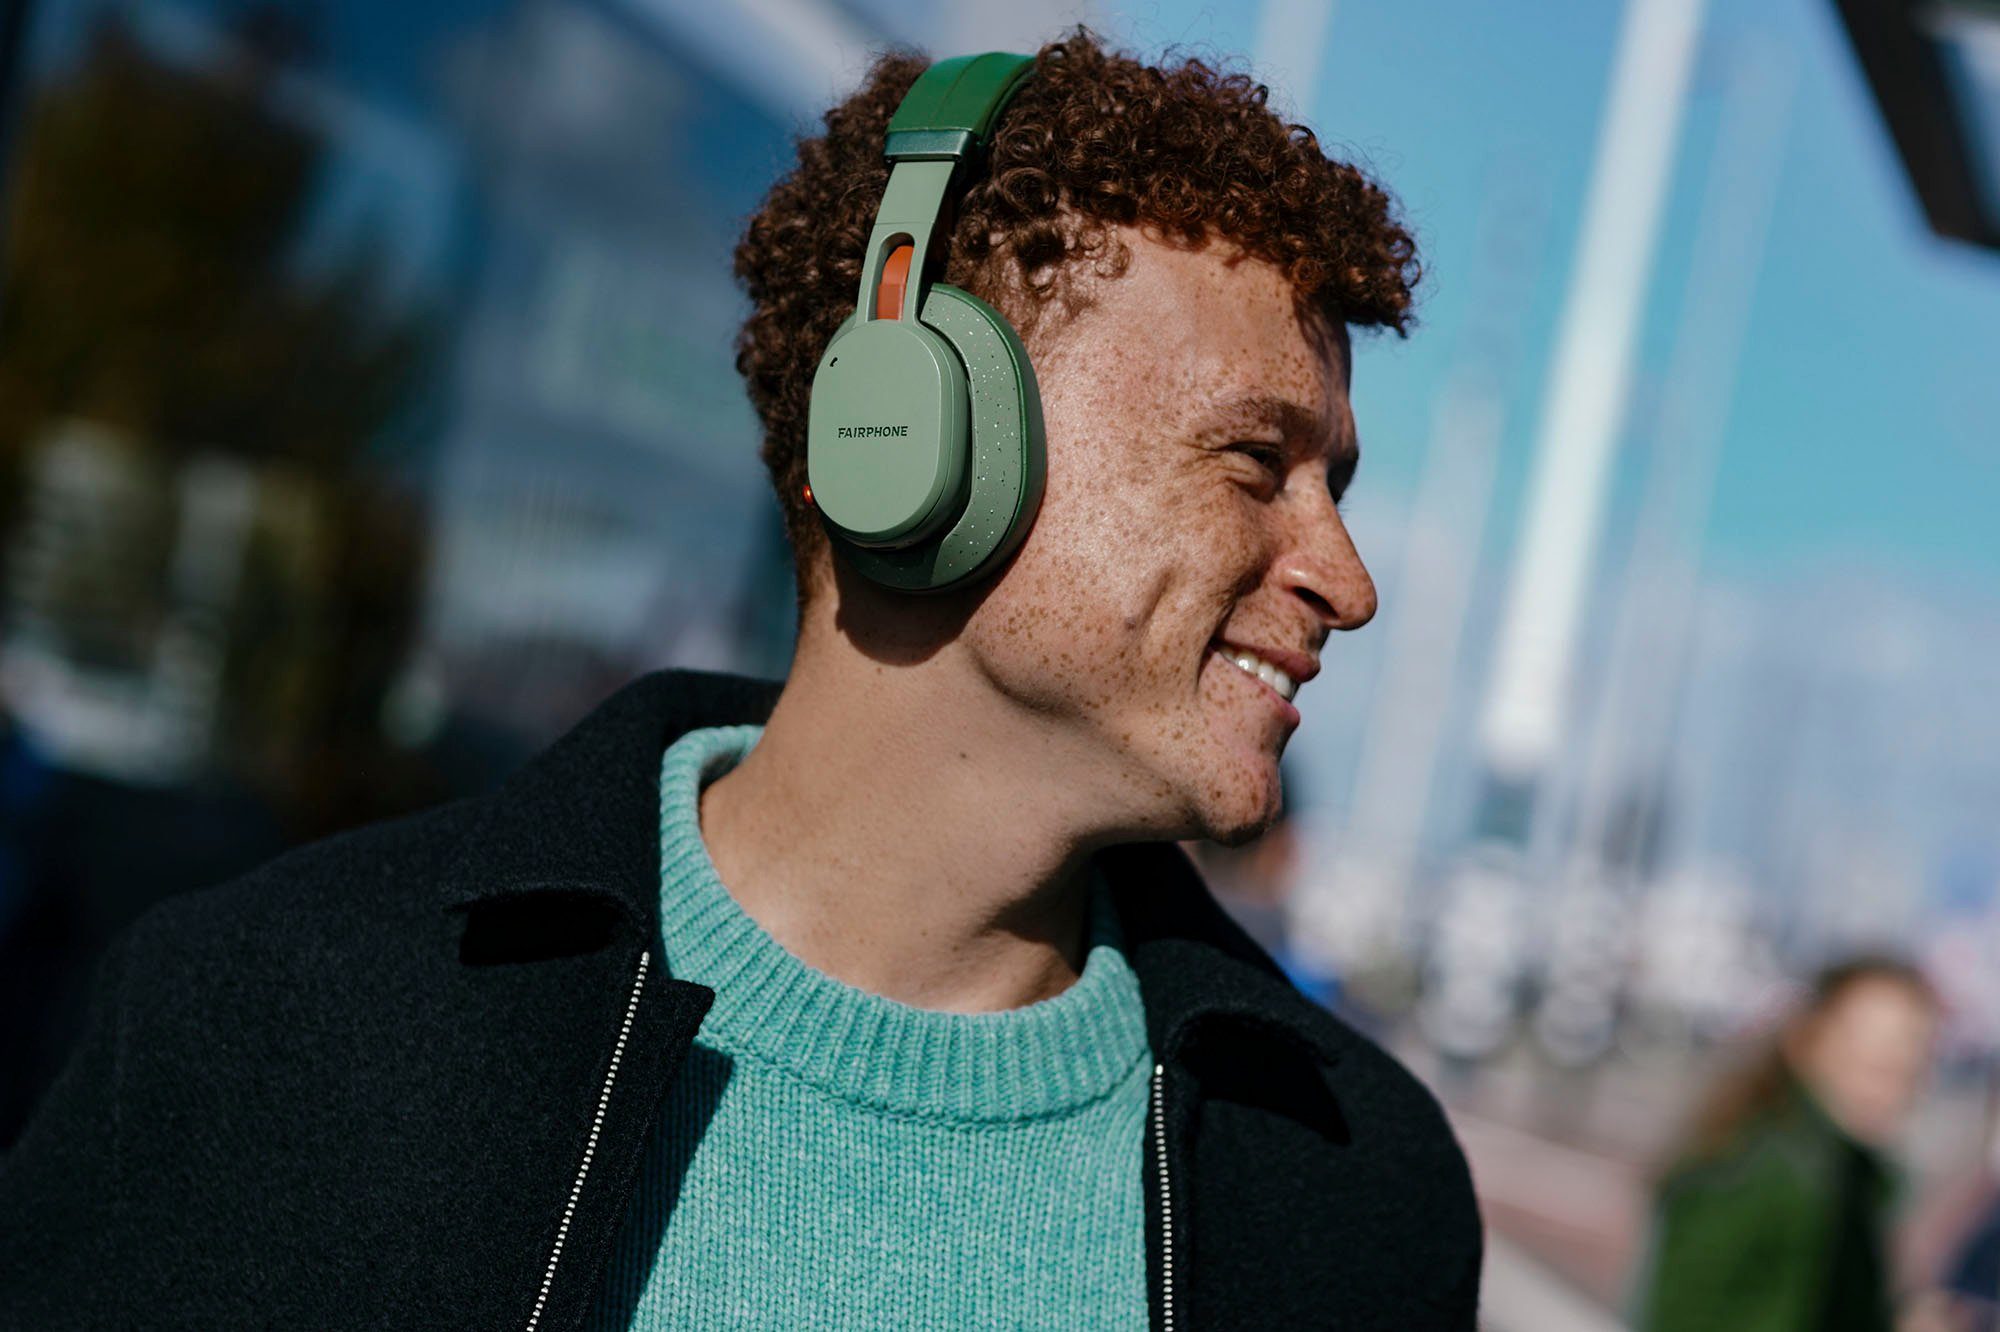 grün Cancelling Over-Ear-Kopfhörer (ANC), Noise (Active Bluetooth) Fairbuds XL Fairphone